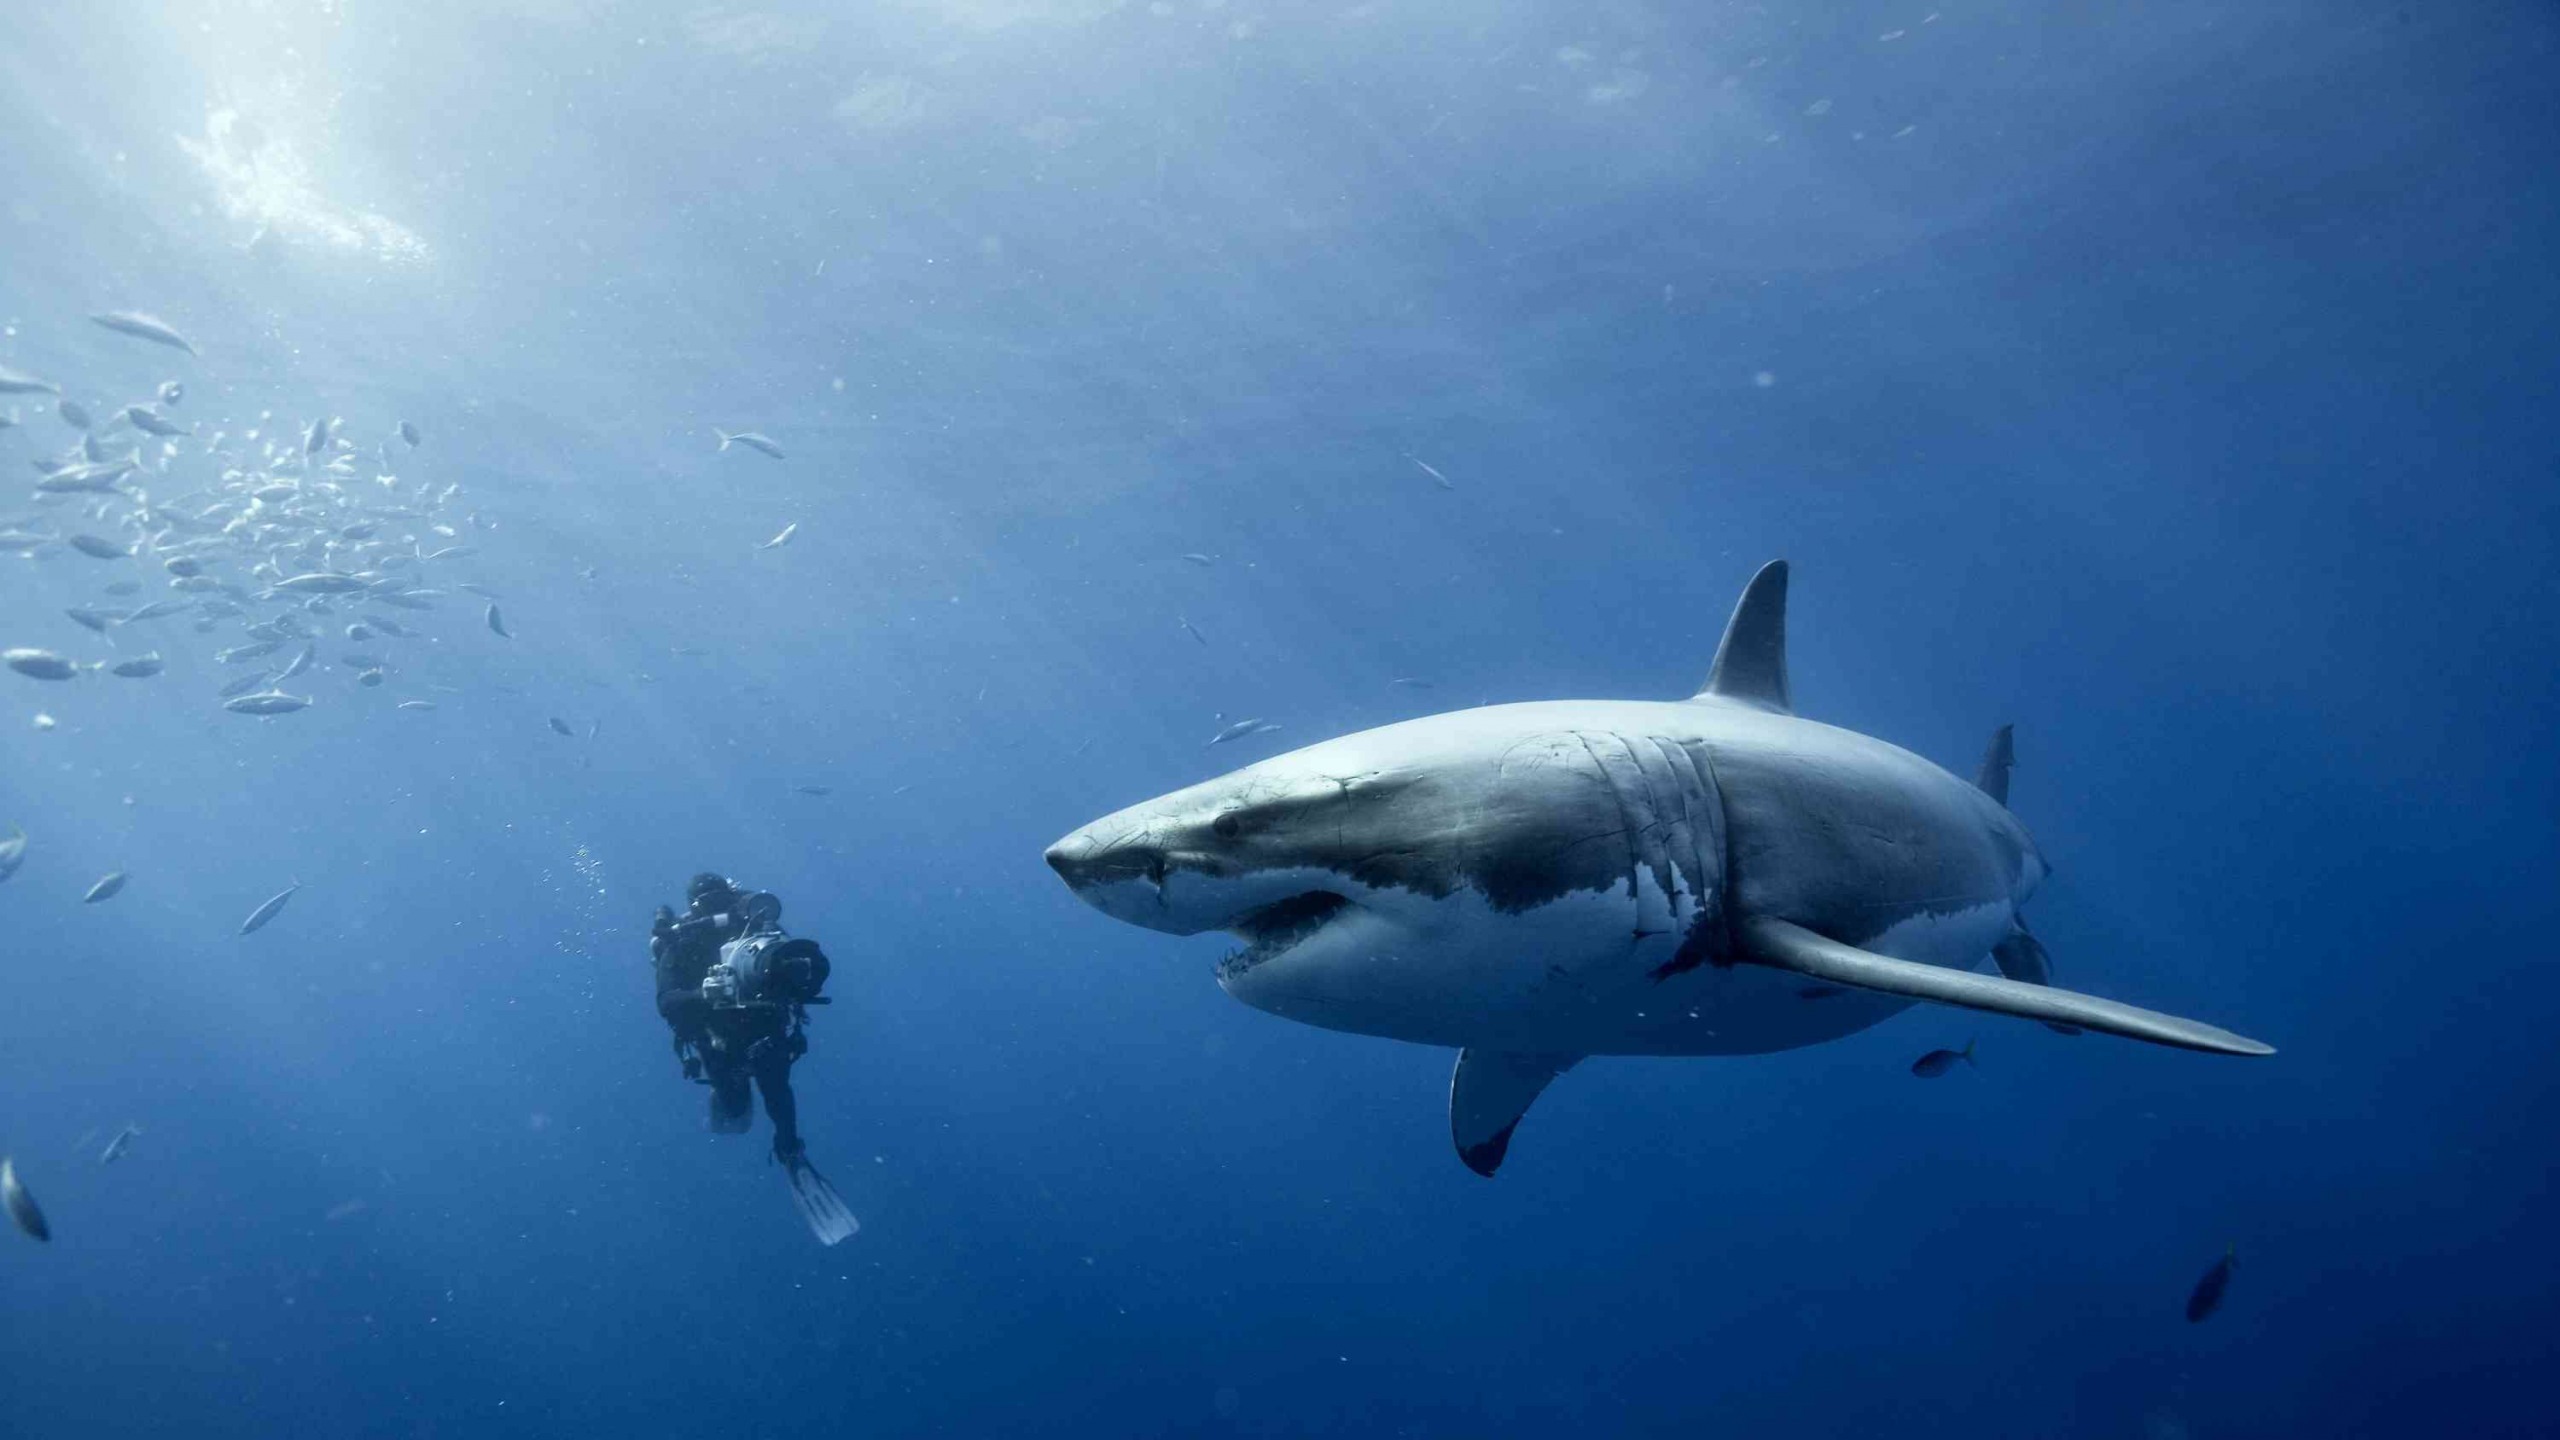 danger live wallpaper,fish,great white shark,shark,lamniformes,underwater